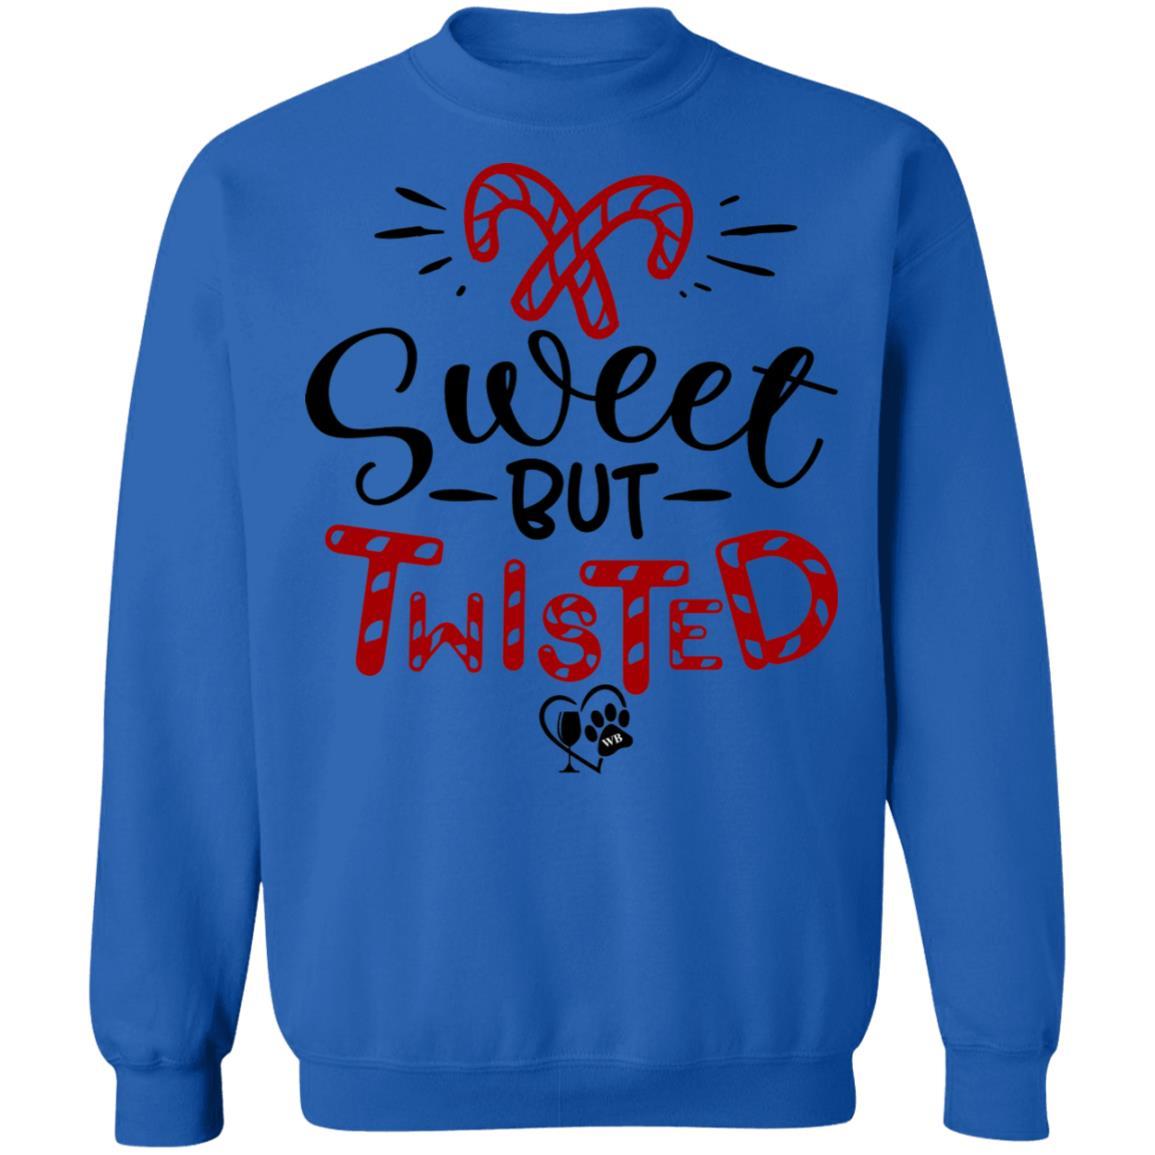 Sweatshirts Royal / S WineyBitches.Co "Sweet But Twisted" Crewneck Pullover Sweatshirt  8 oz. WineyBitchesCo